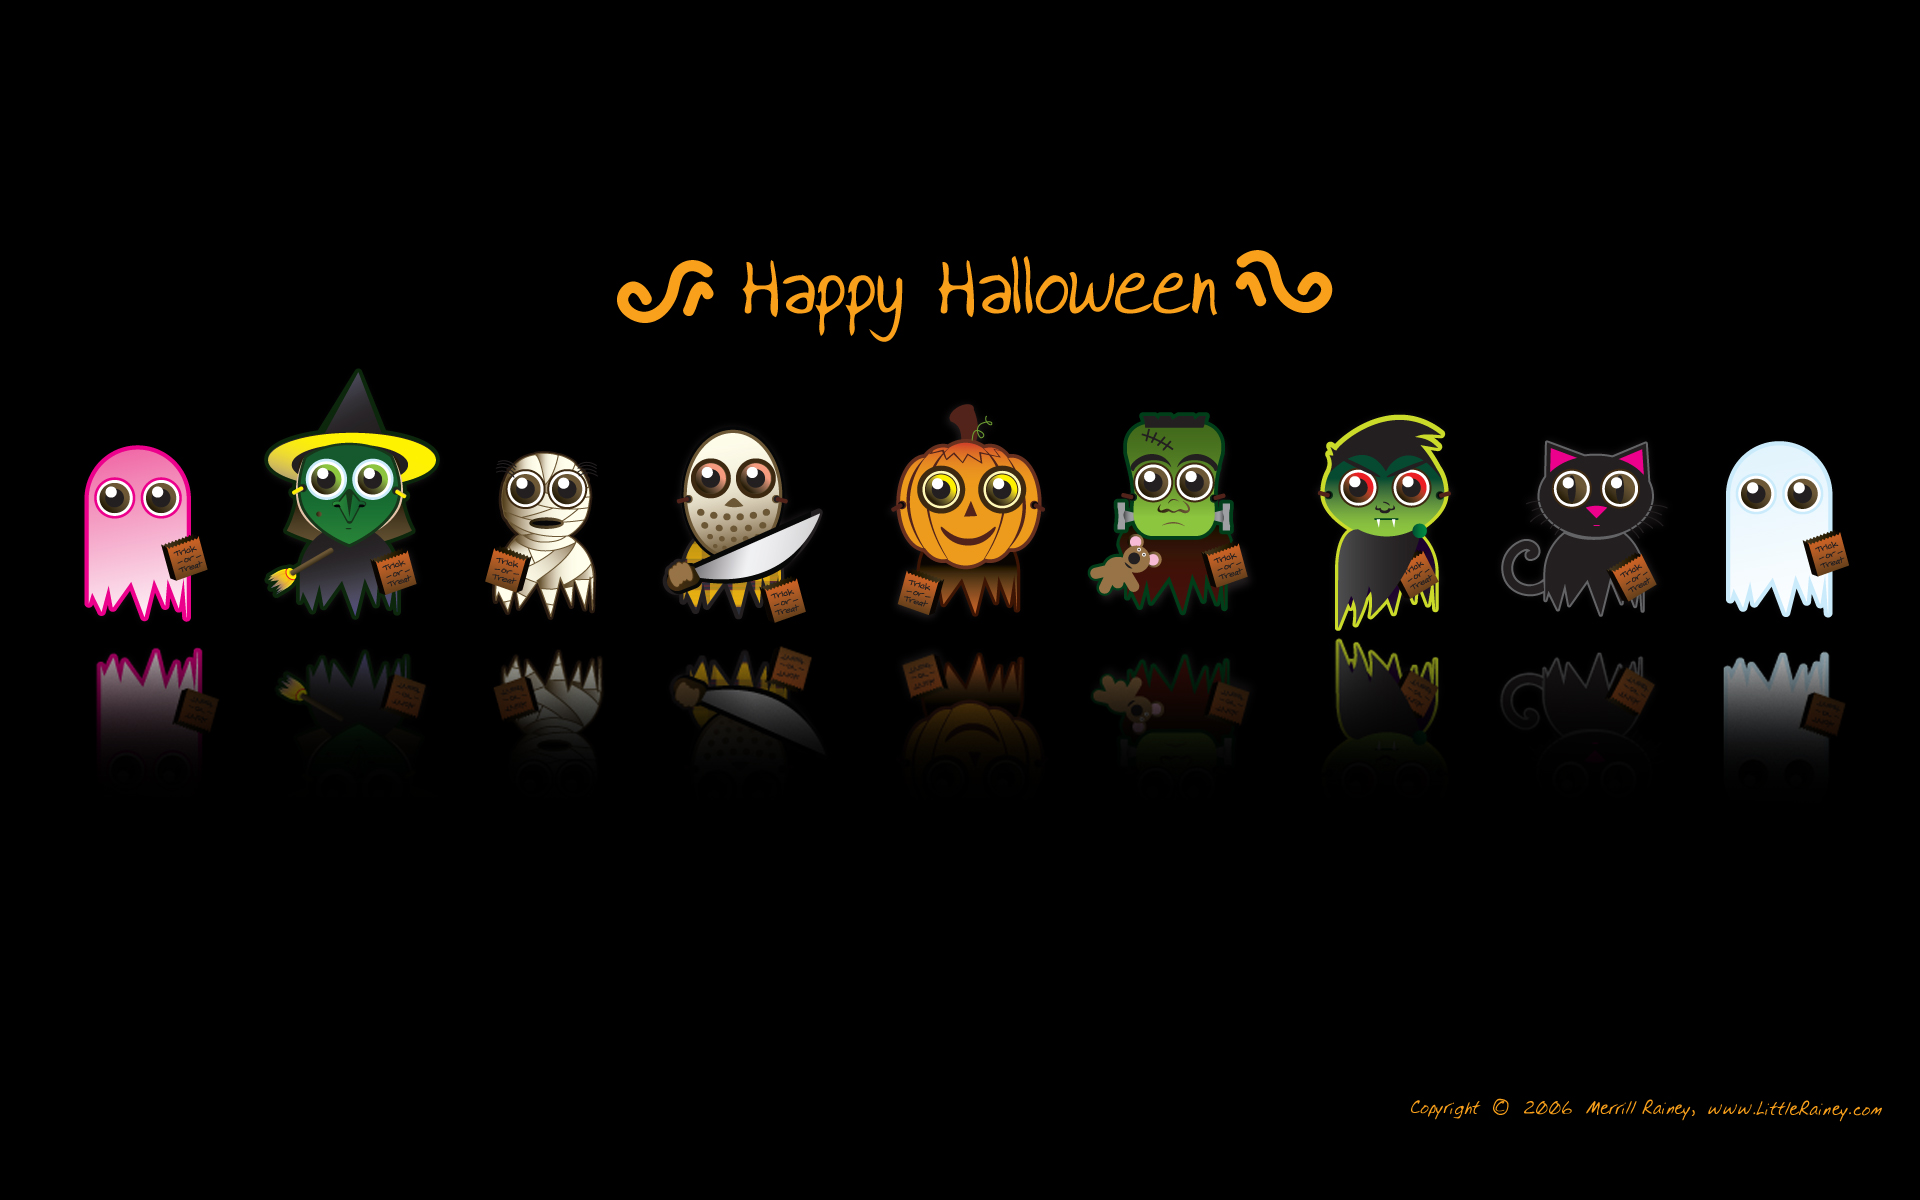 Cartoons Halloween Characters Wallpaper download